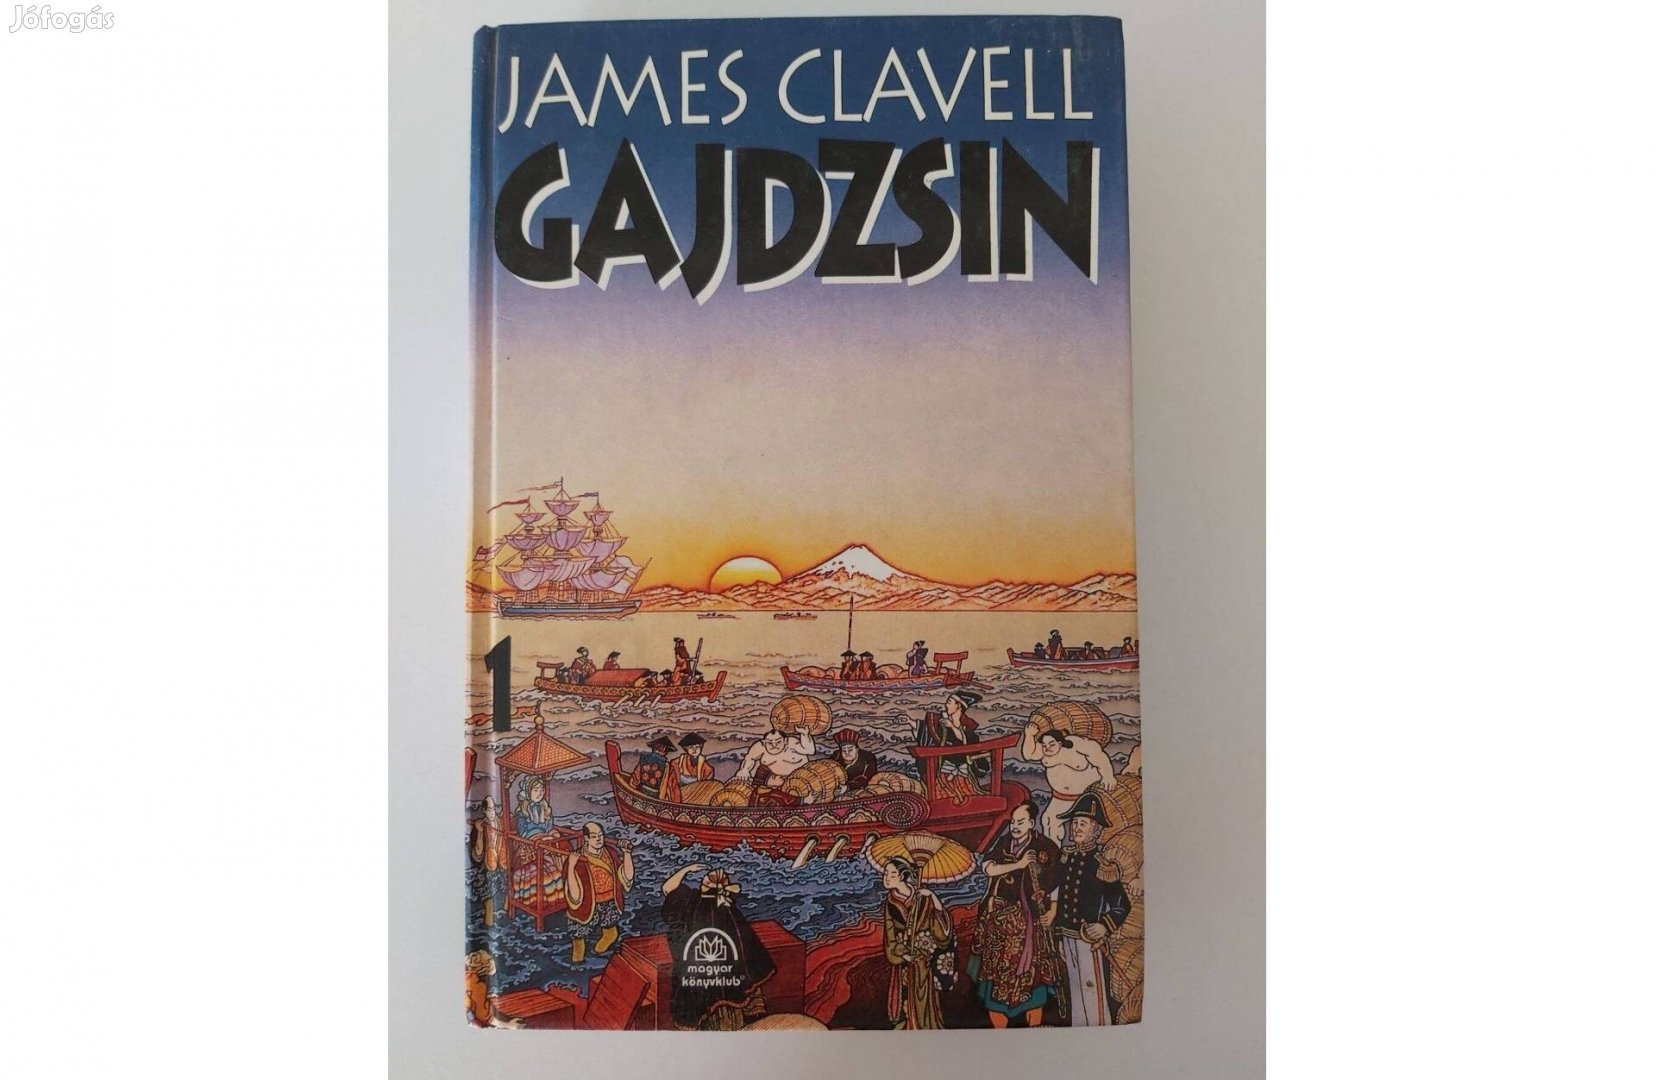 James Clavell: Gajdzsin